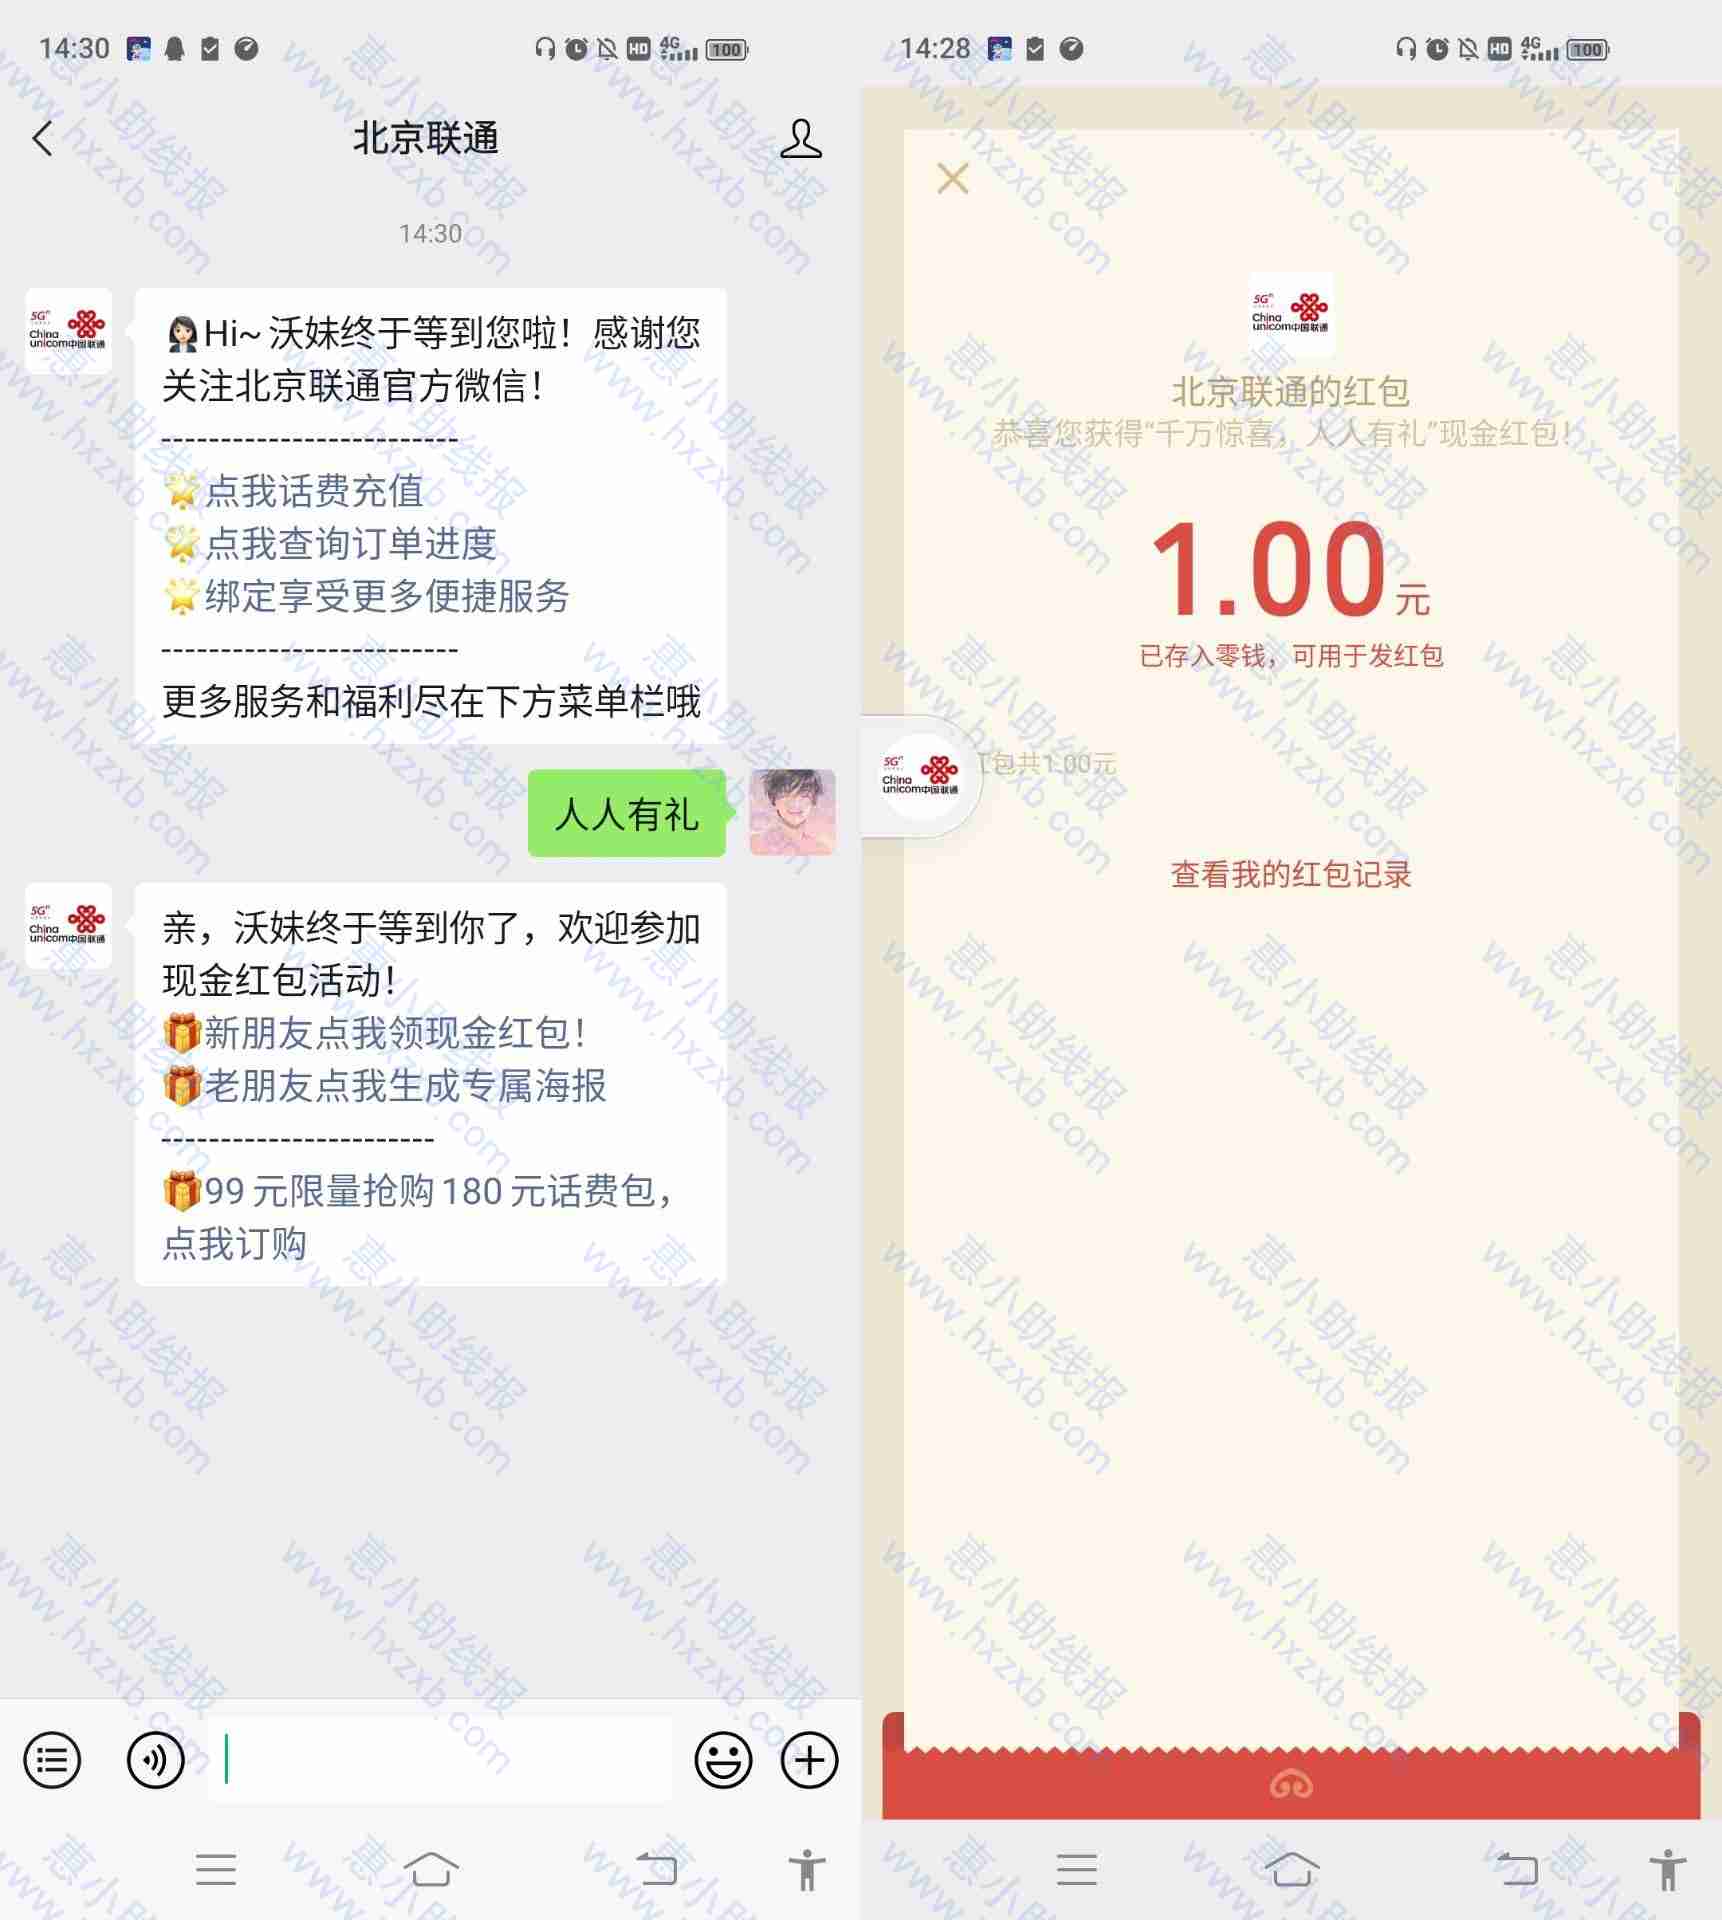 微信关注北京联通领1元红包